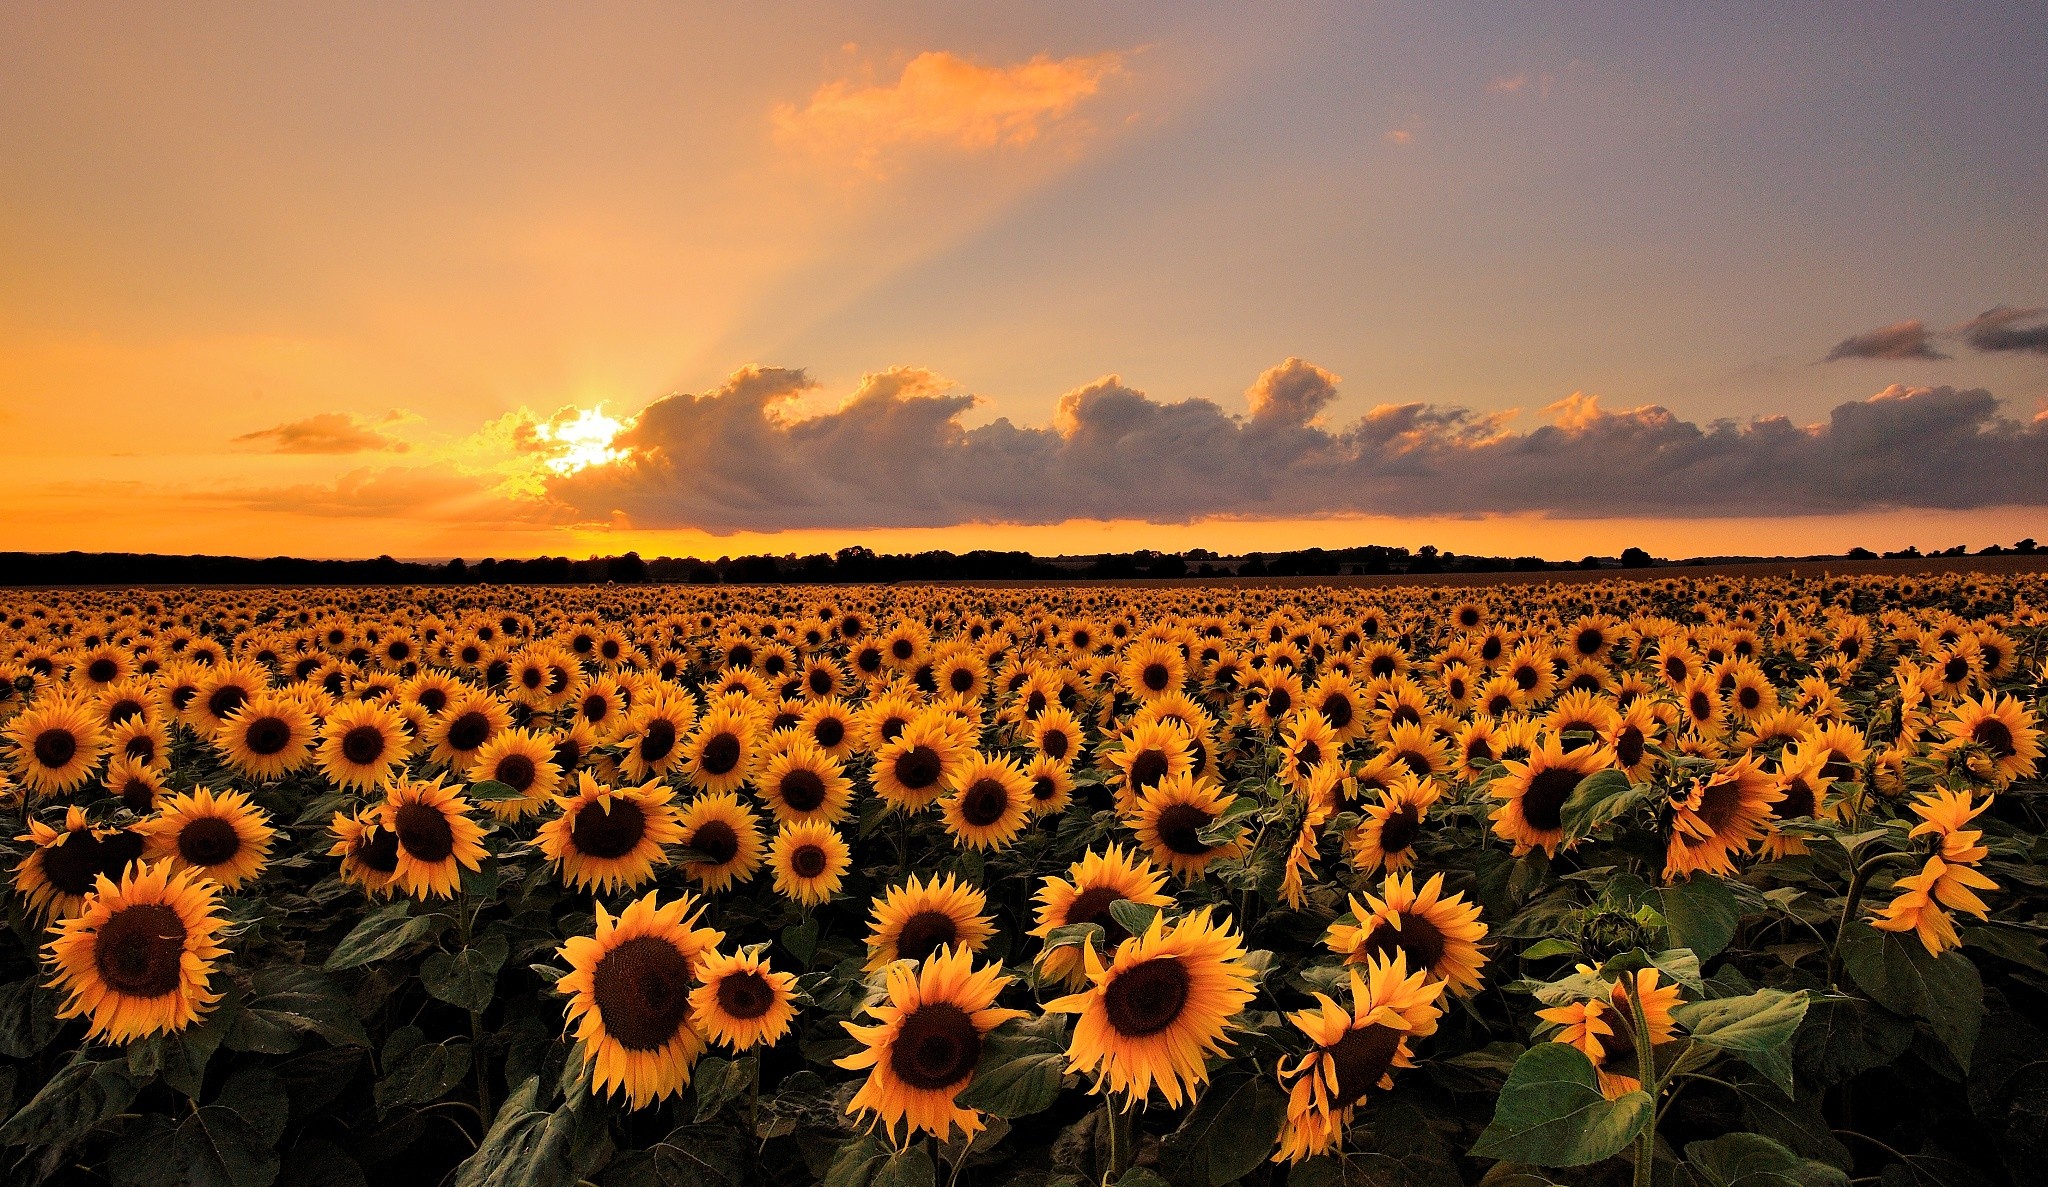 General 2048x1187 landscape field flowers sunflowers sunset orange sky Agro (Plants) plants sky sunlight yellow flowers